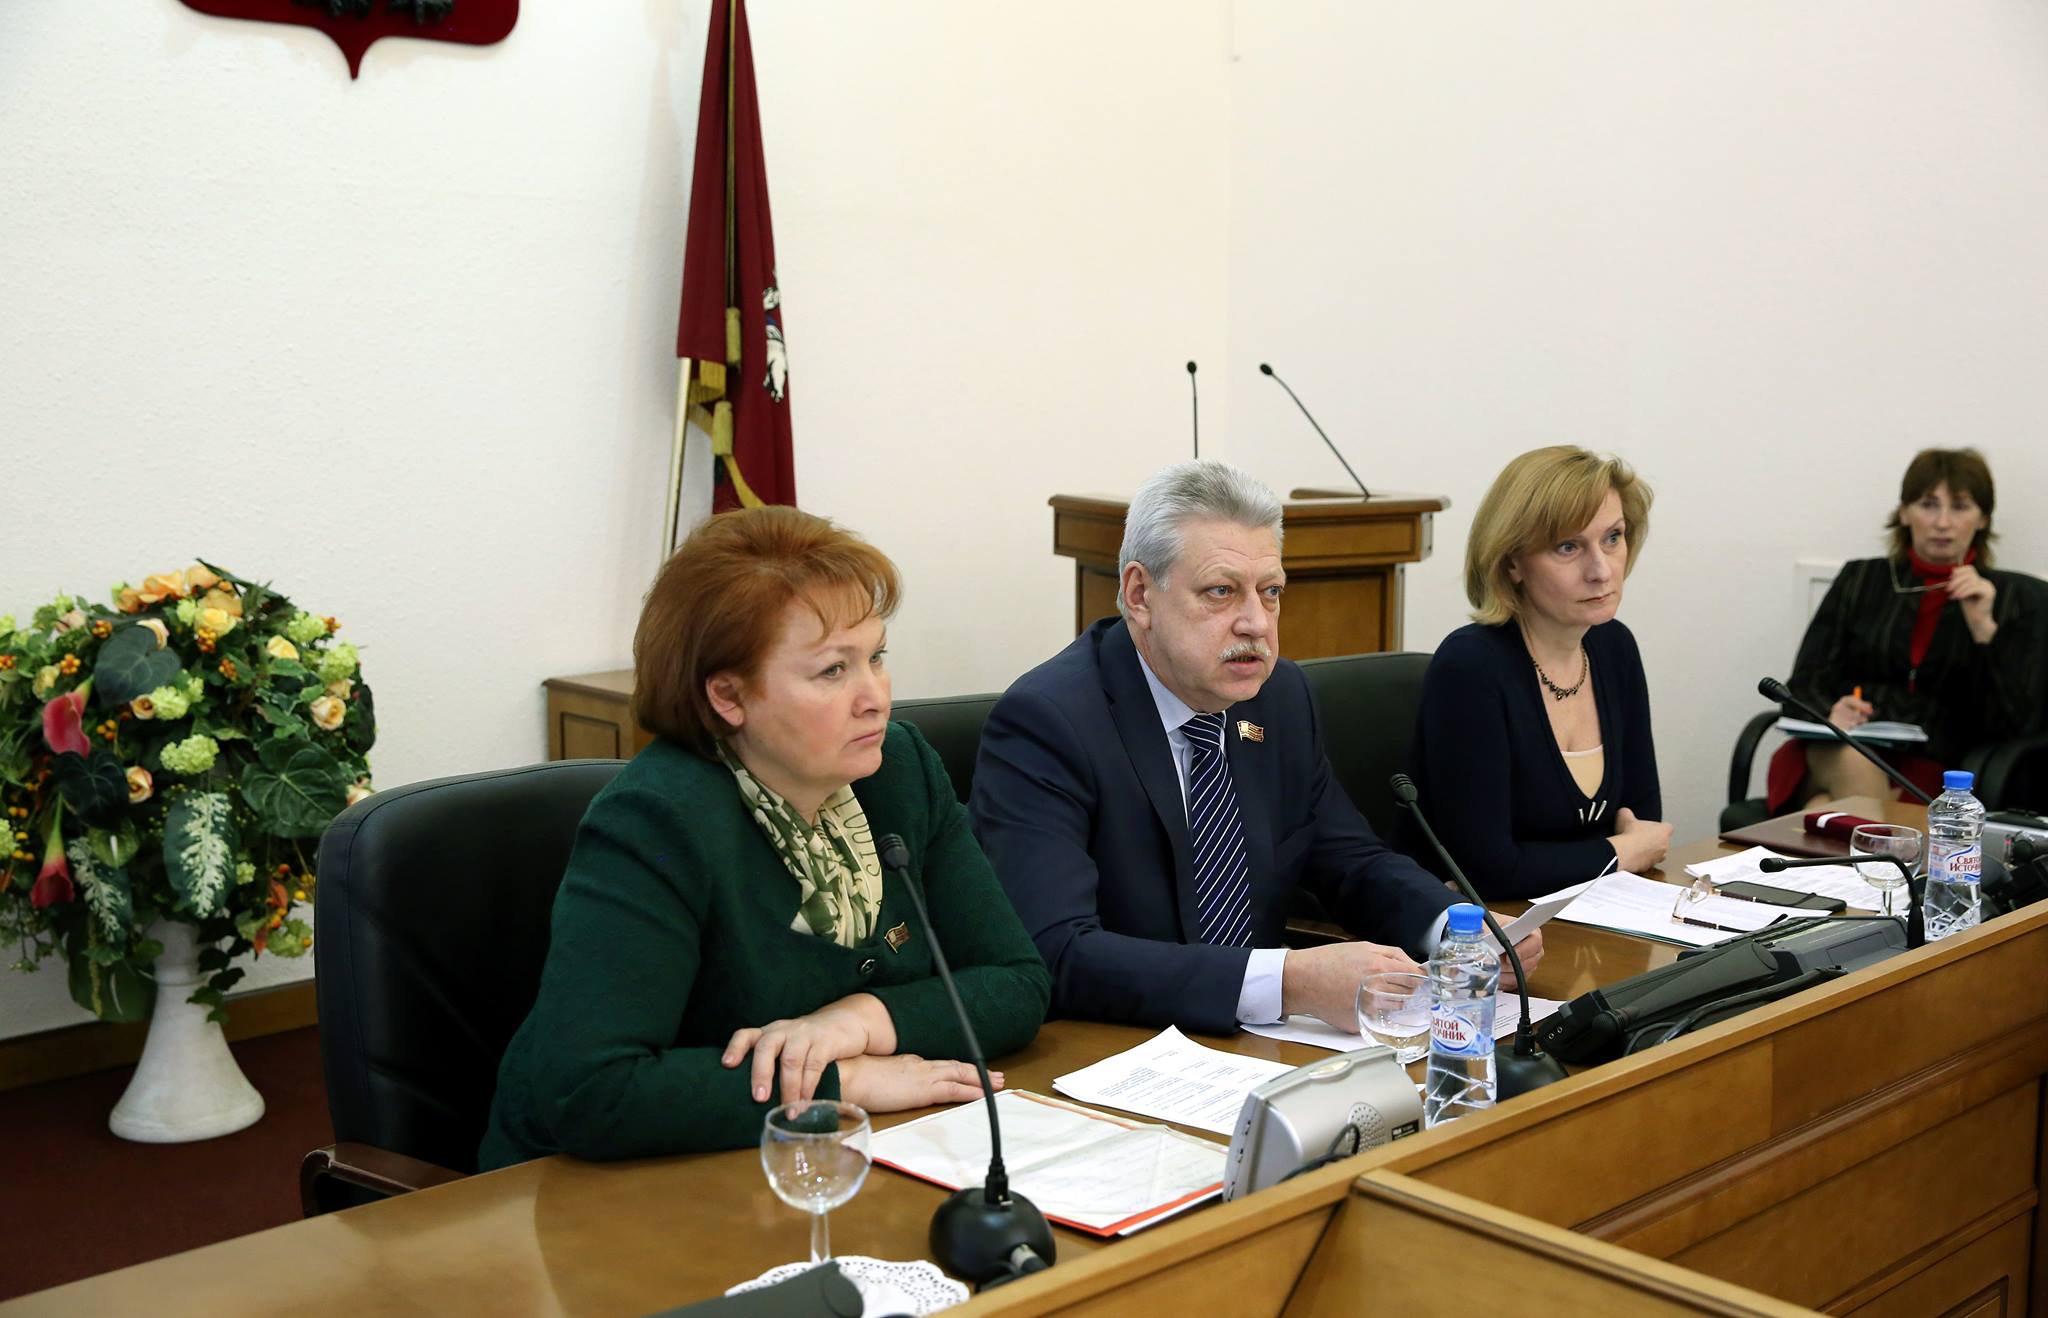 Работу нового центра для трудовых мигрантов обсудили депутаты трех комиссий